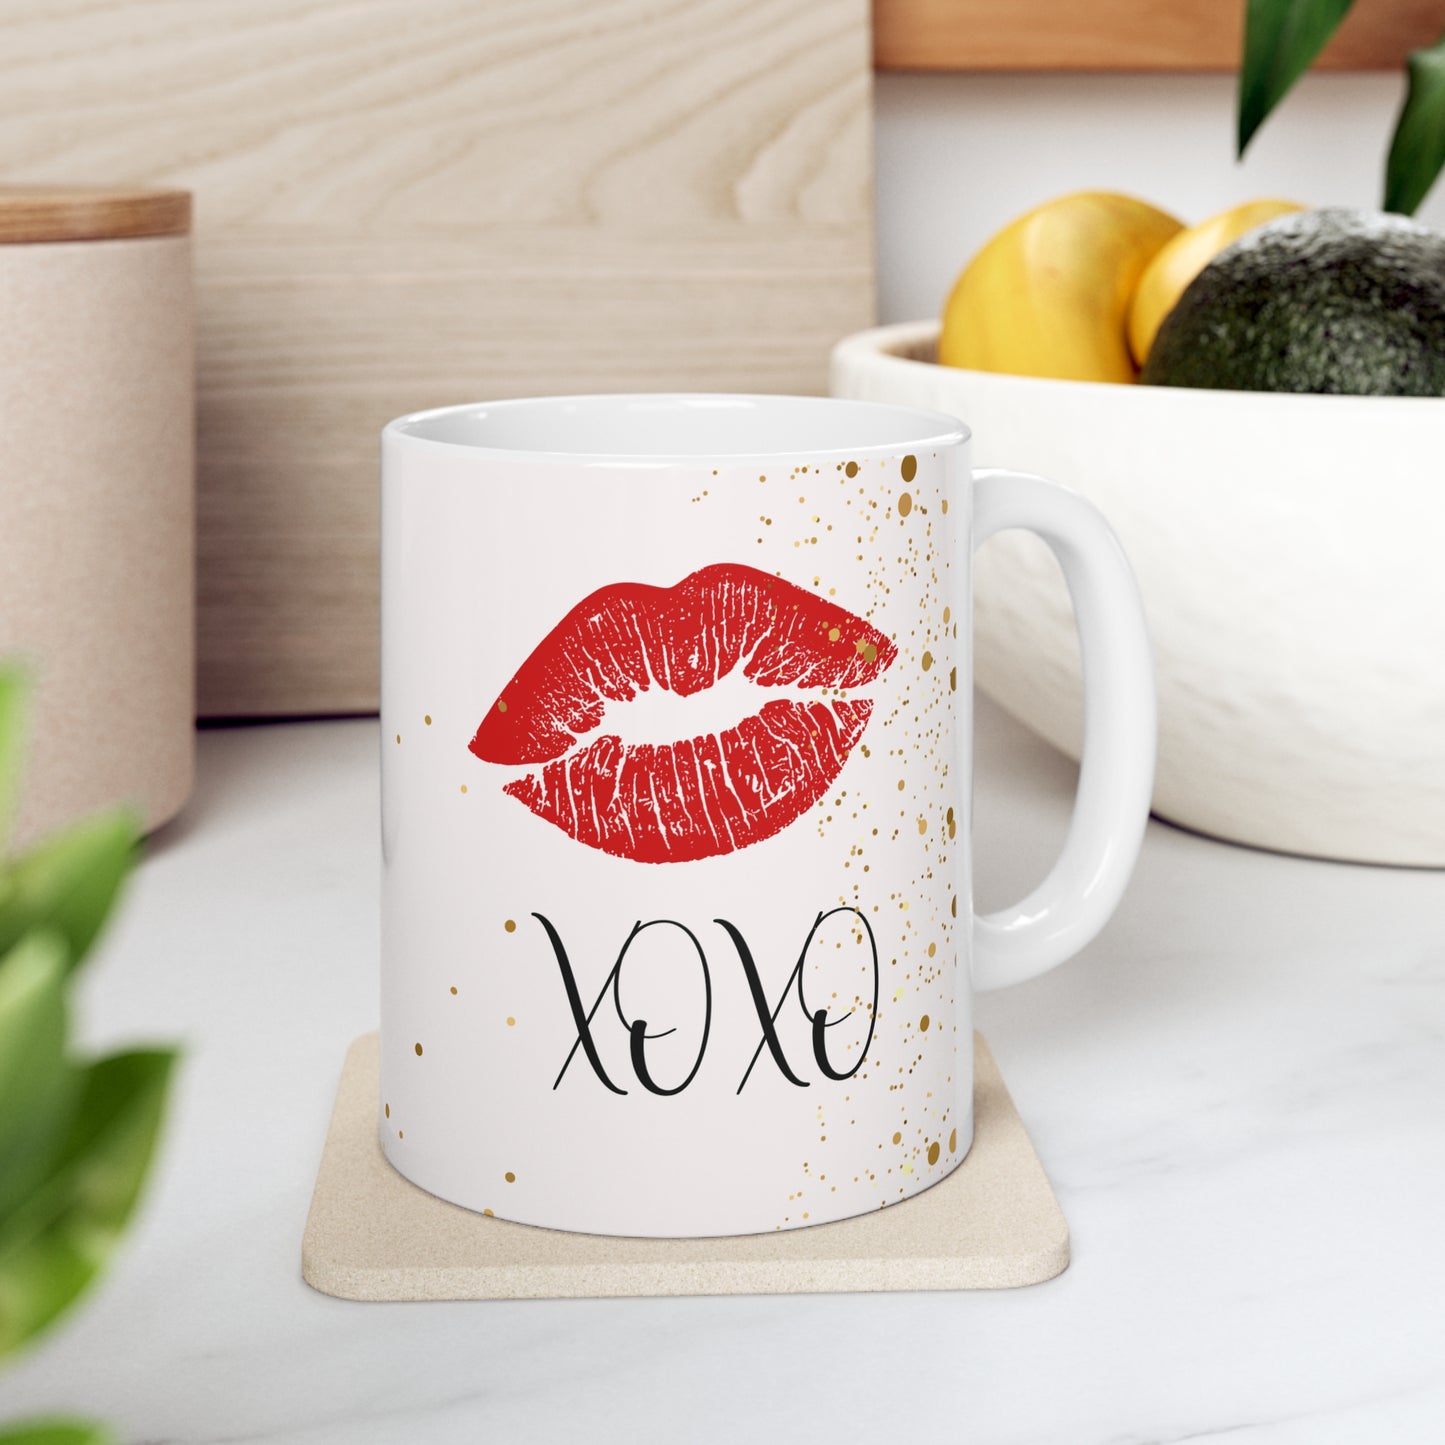 Kiss, Kiss  Coffee Mug, Kiss Coffee Mug, Lips Coffee Mug, Gift for Her, Gift for Friend, Gift for Co-Worker, Gold Coffee Mug, Fashion Coffee Mug, Glamour Coffee Mug,Ceramic Mug 11oz